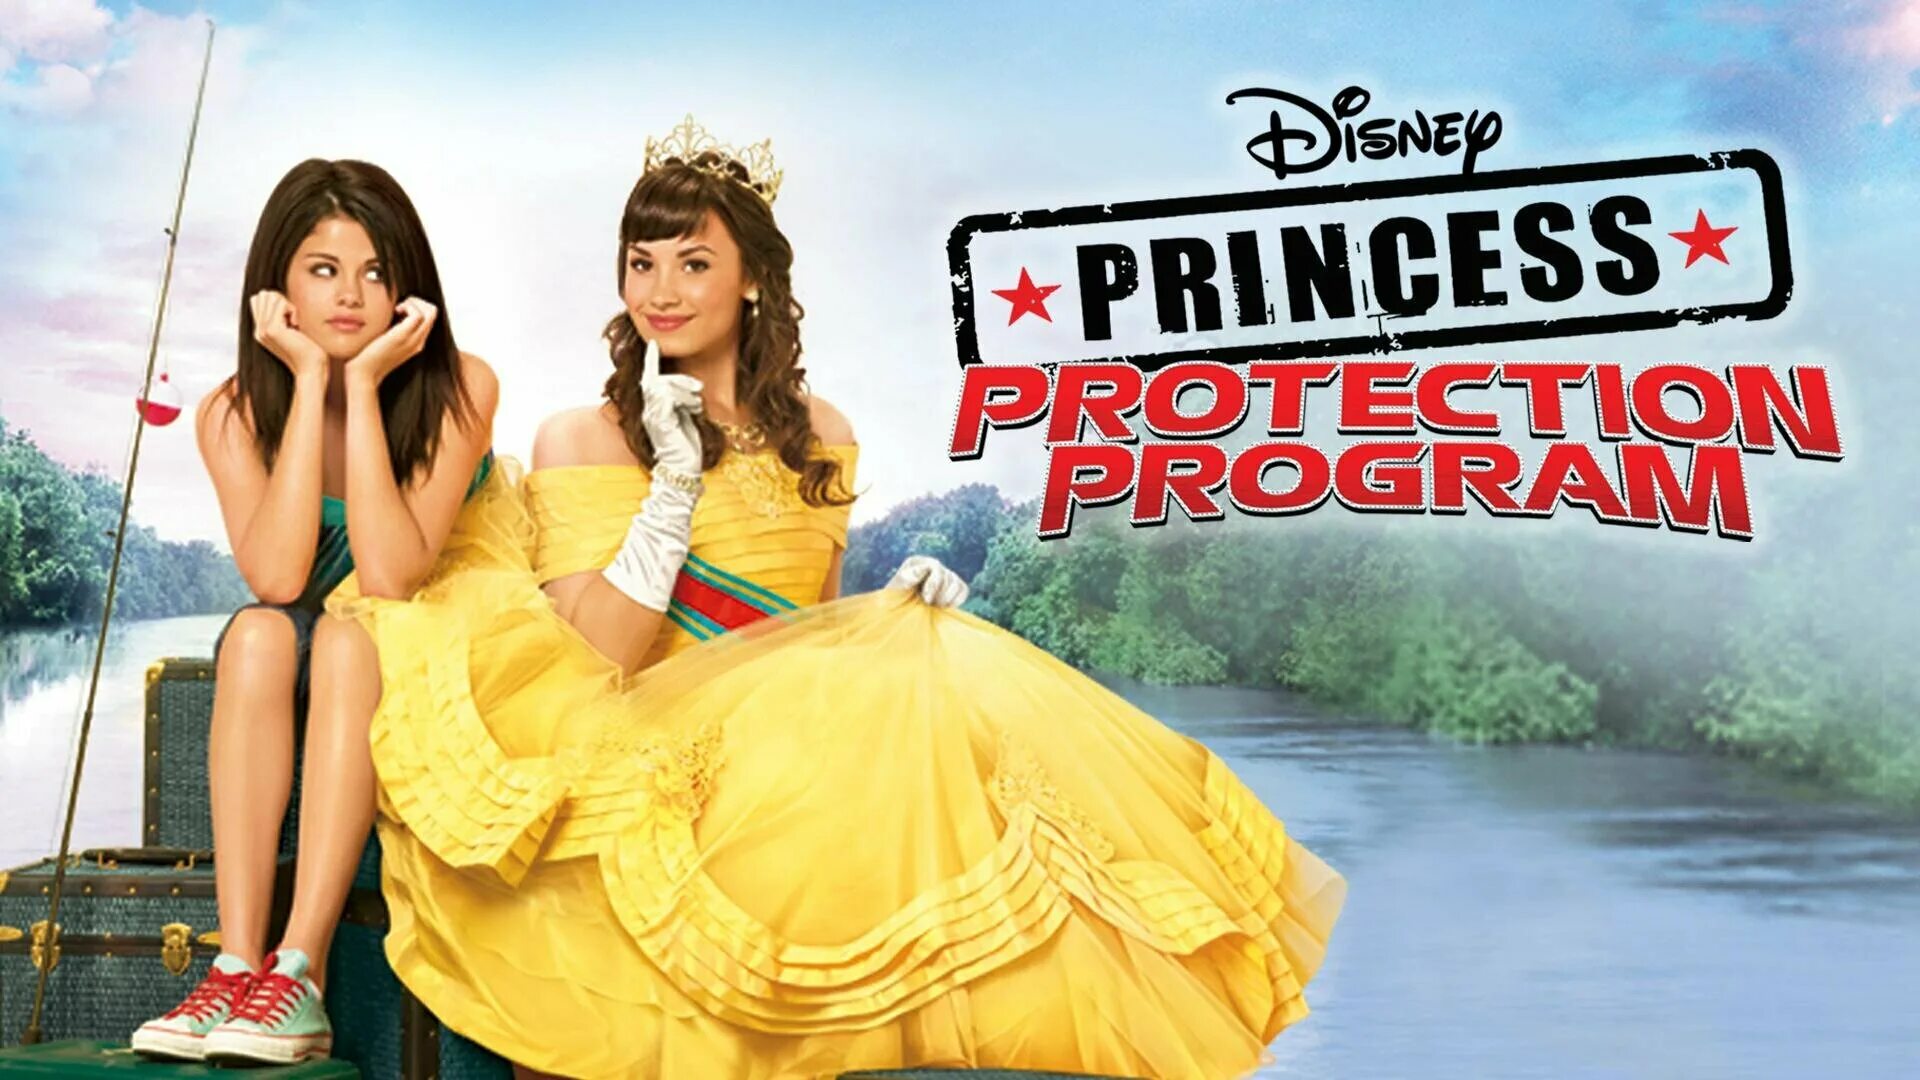 Программа принцессы. Деми Ловато программа защиты принцесс. Принцесса Розалинда программа защиты.